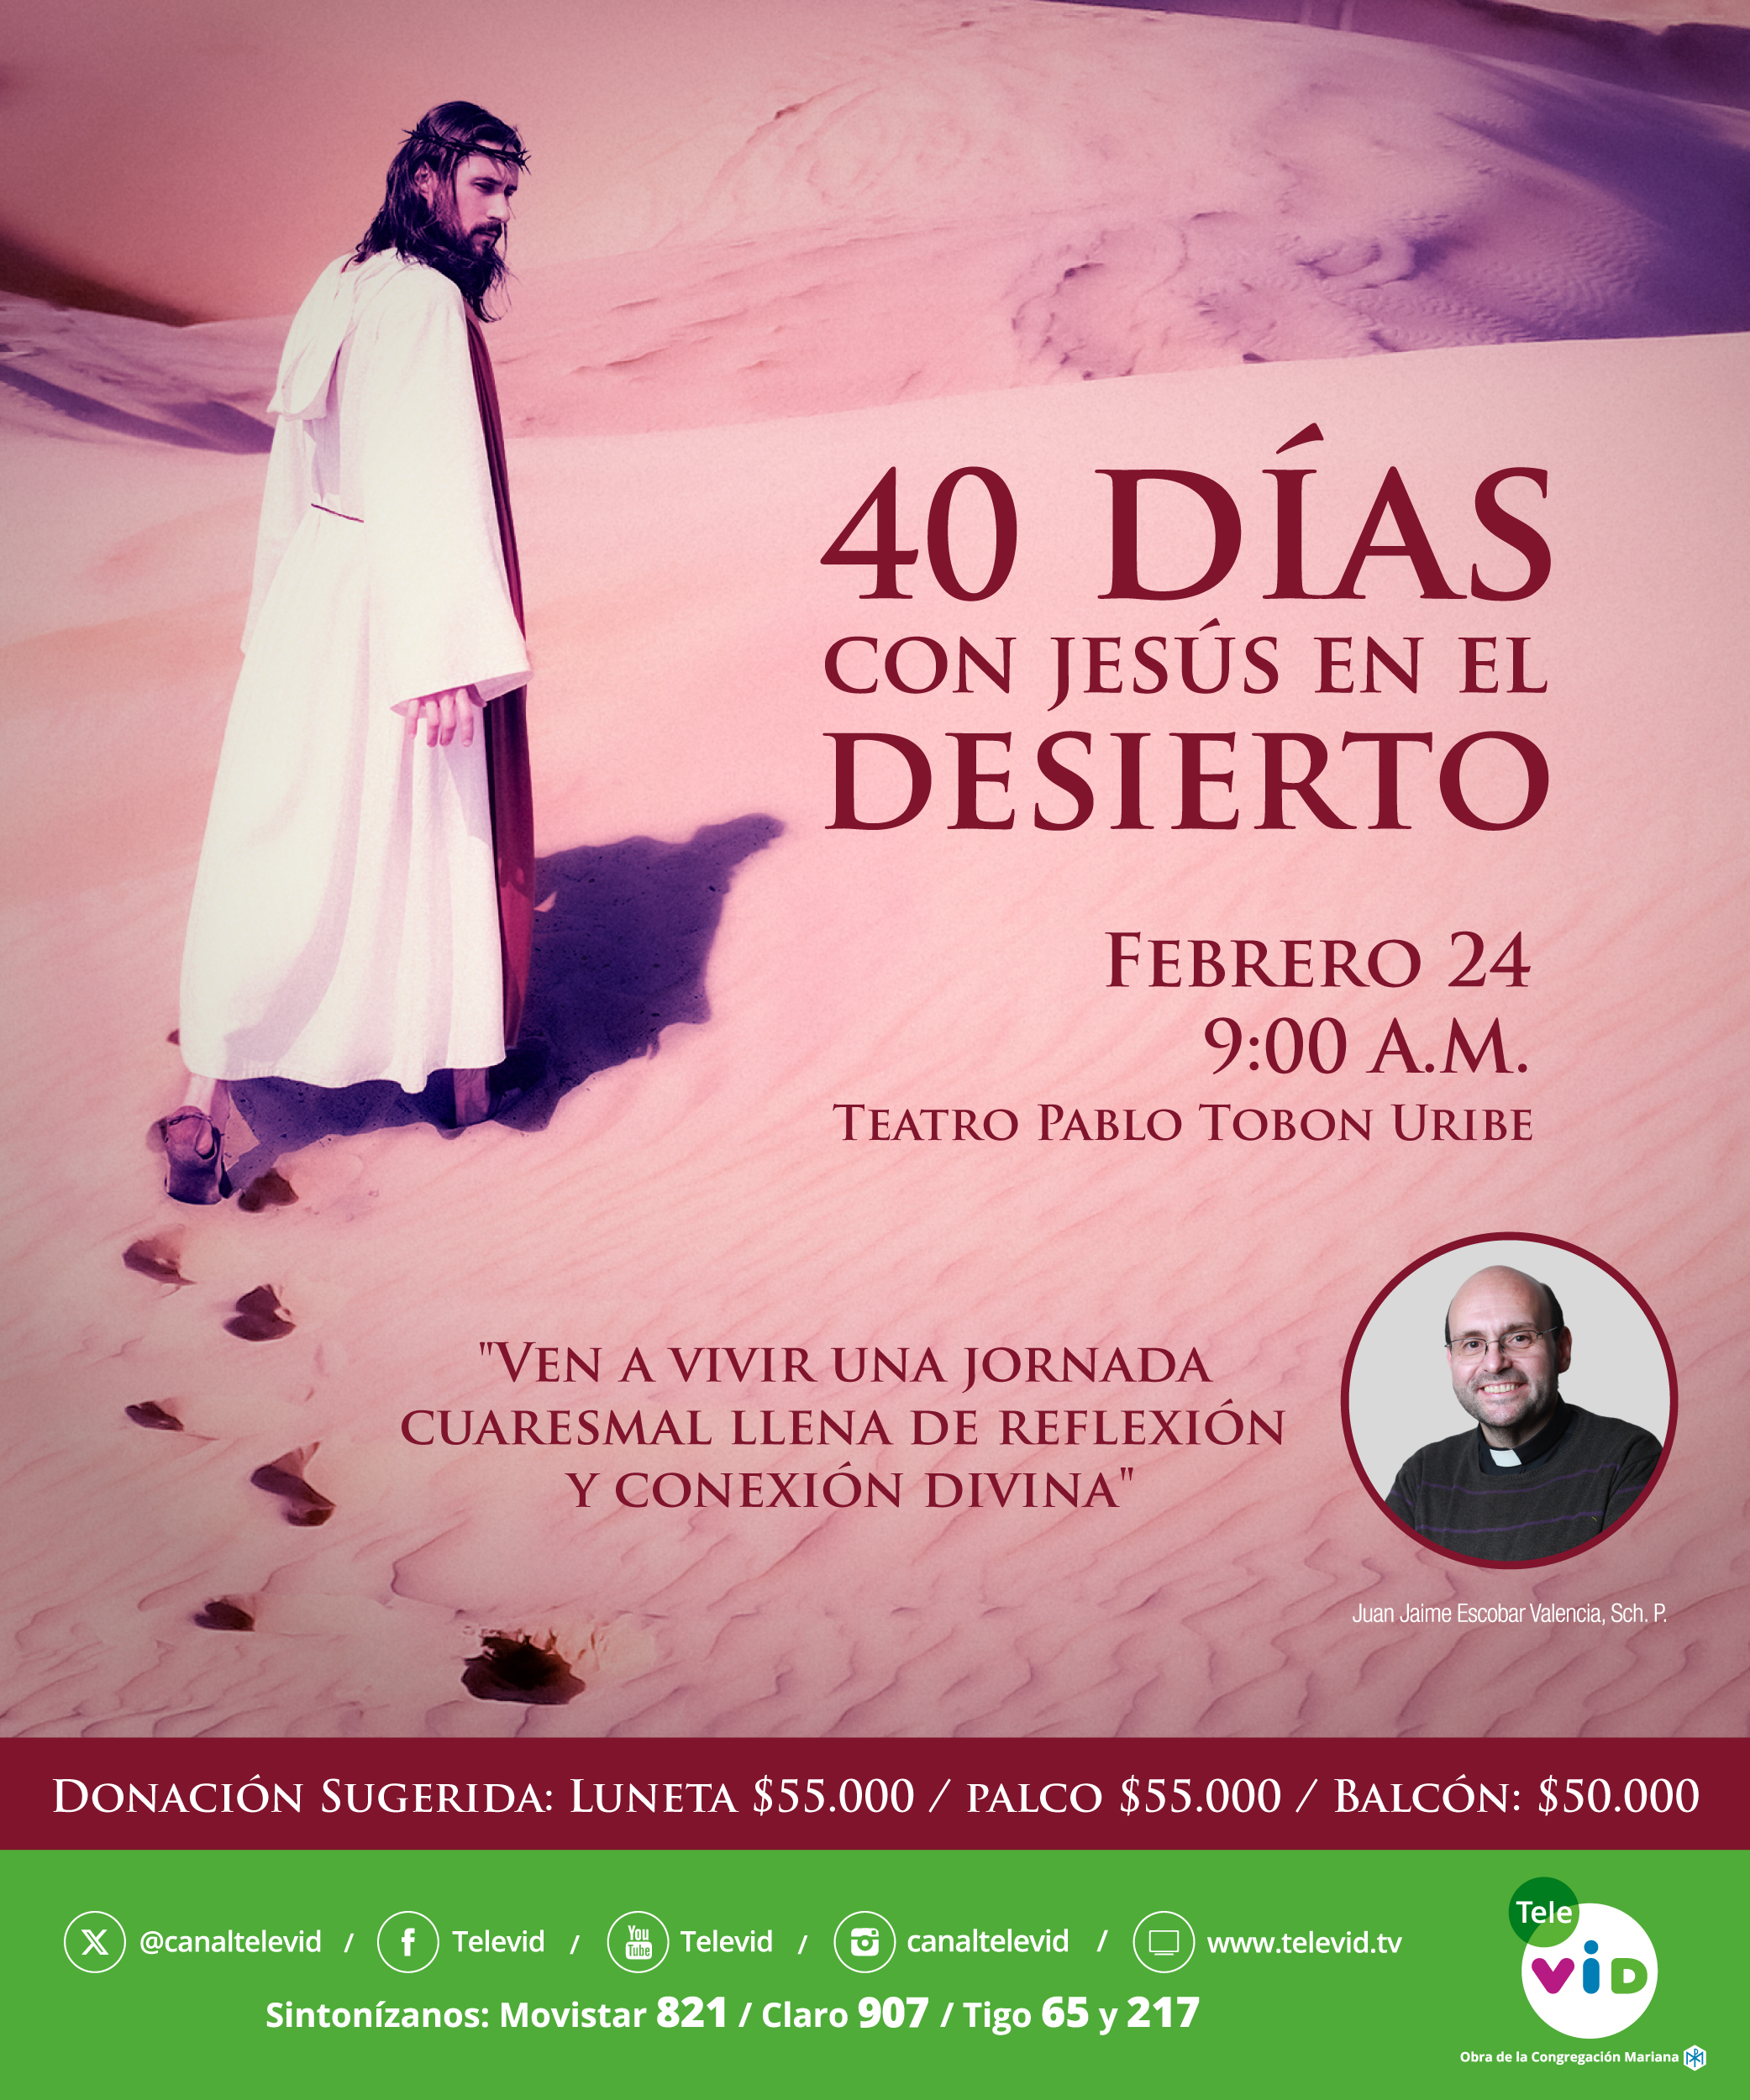 40 días con jesus en el desierto ecard (1)